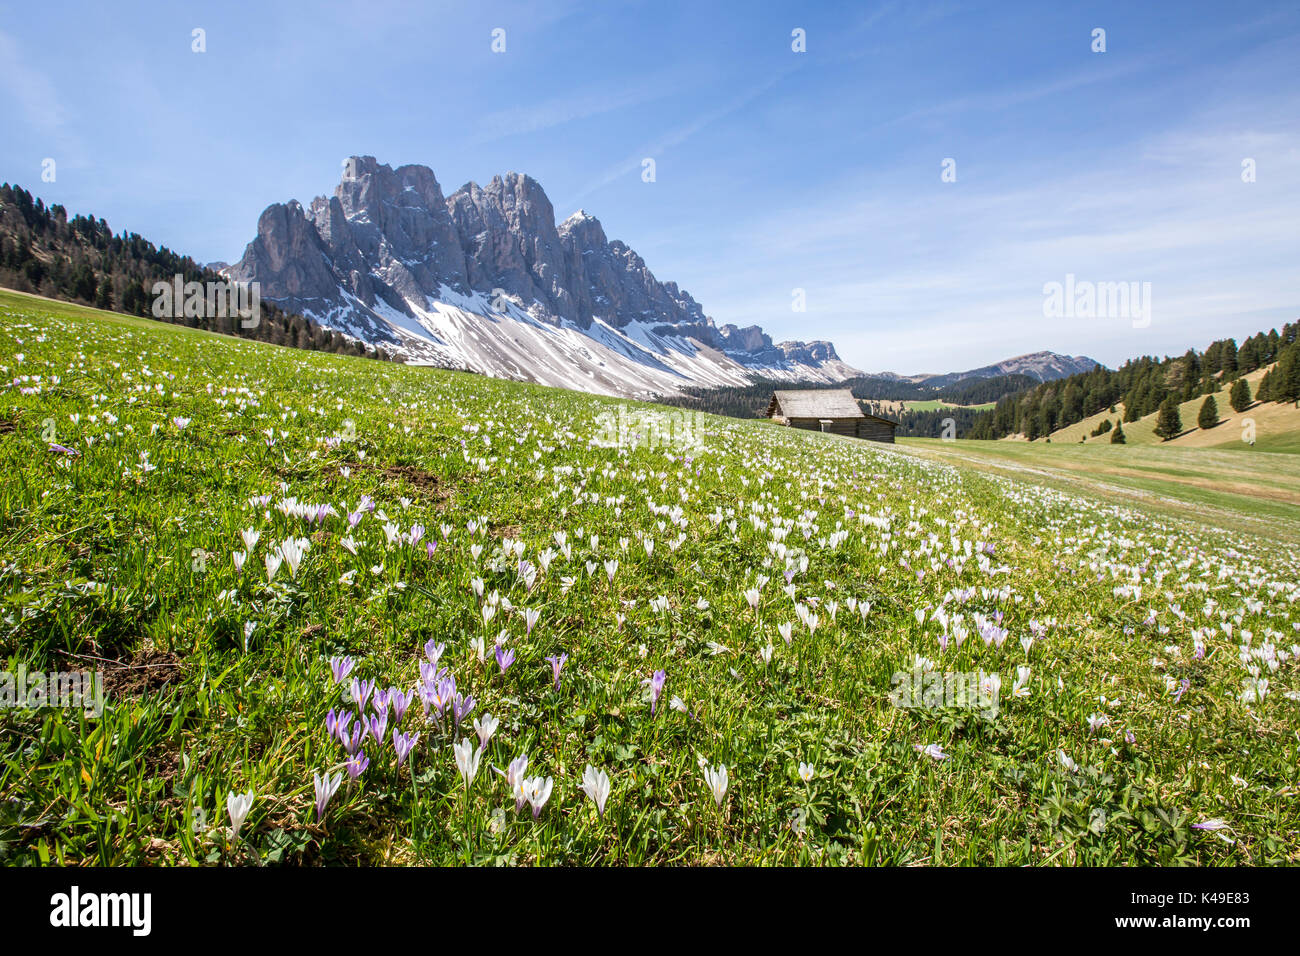 Blumen blühen auf den Wiesen am Fuße der Geisler. Malga Gampen Villnösser Tal. Südtirol Dolomiten Italien Europa Stockfoto